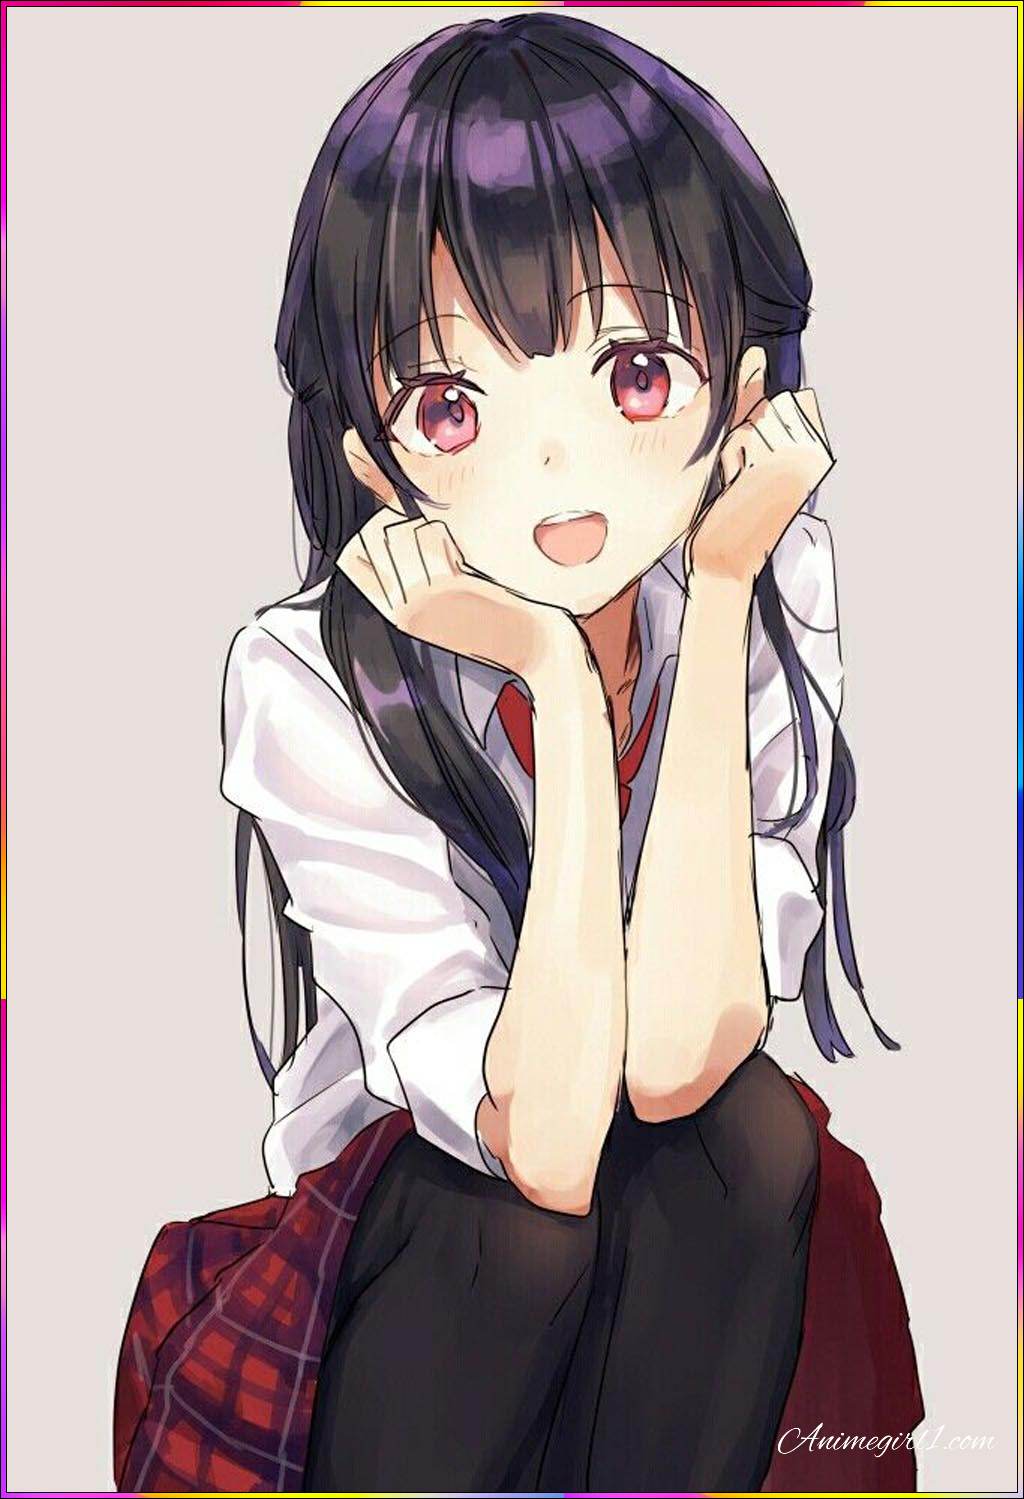 angry anime girl
